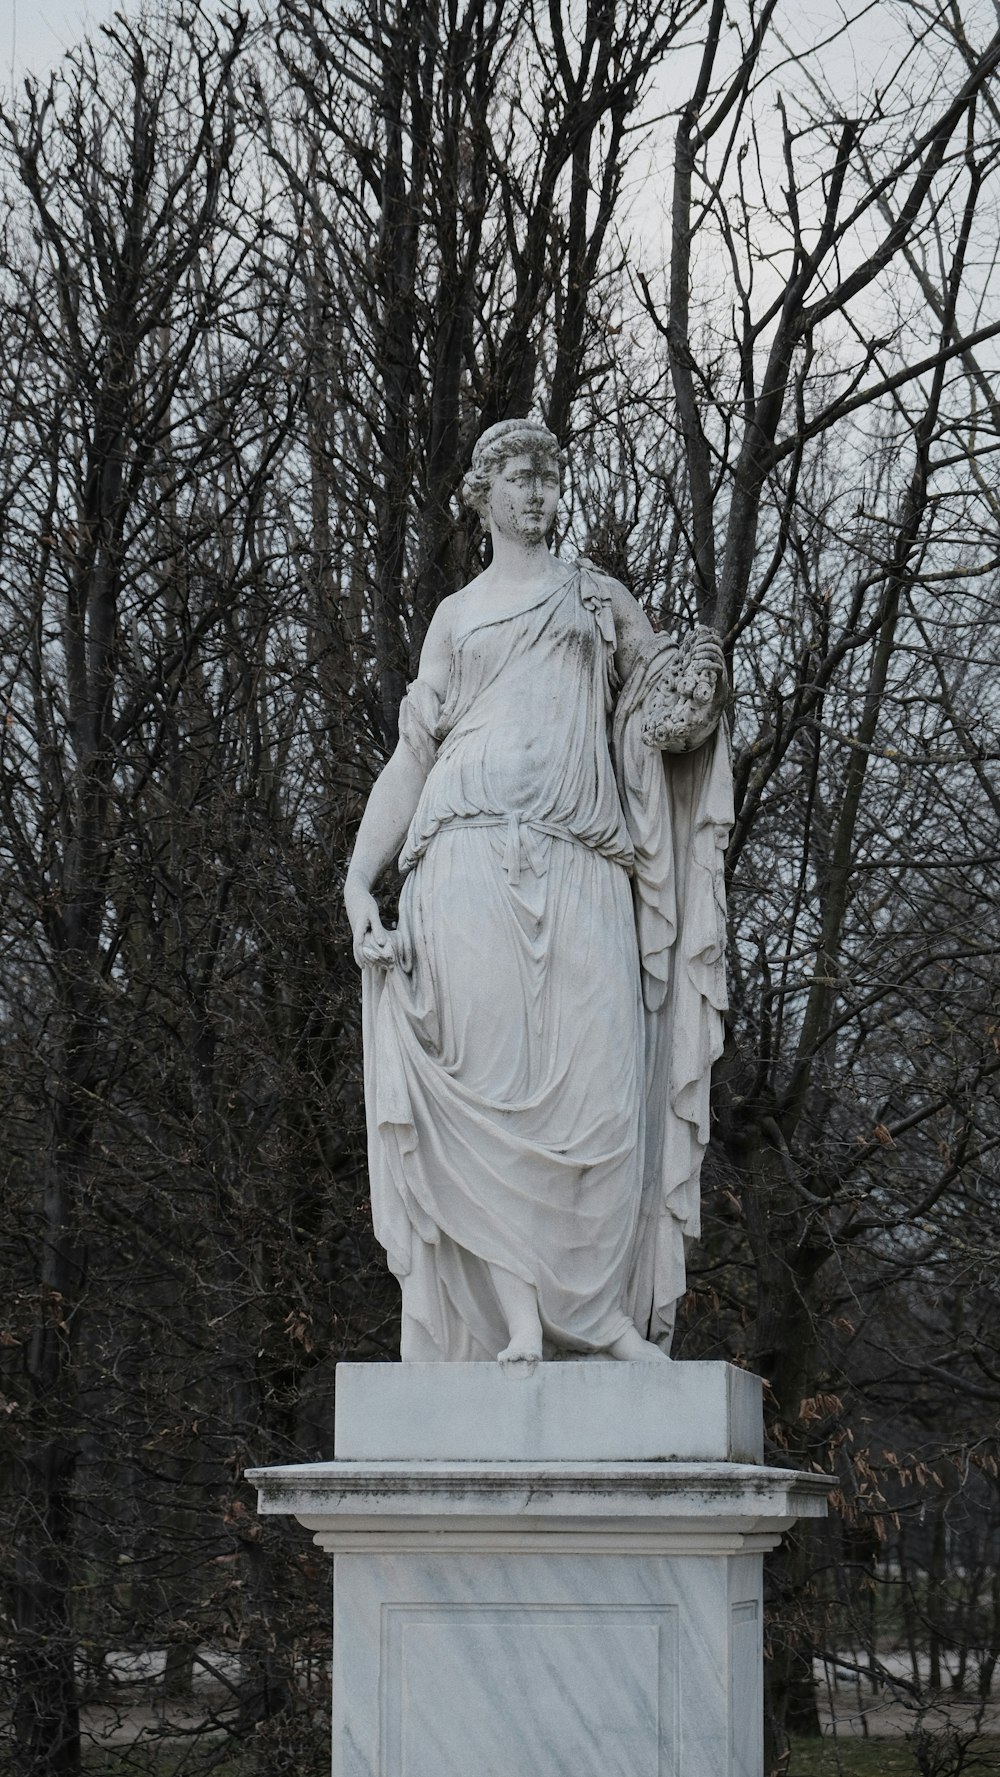 바구니를 들고 있는 여성의 동상